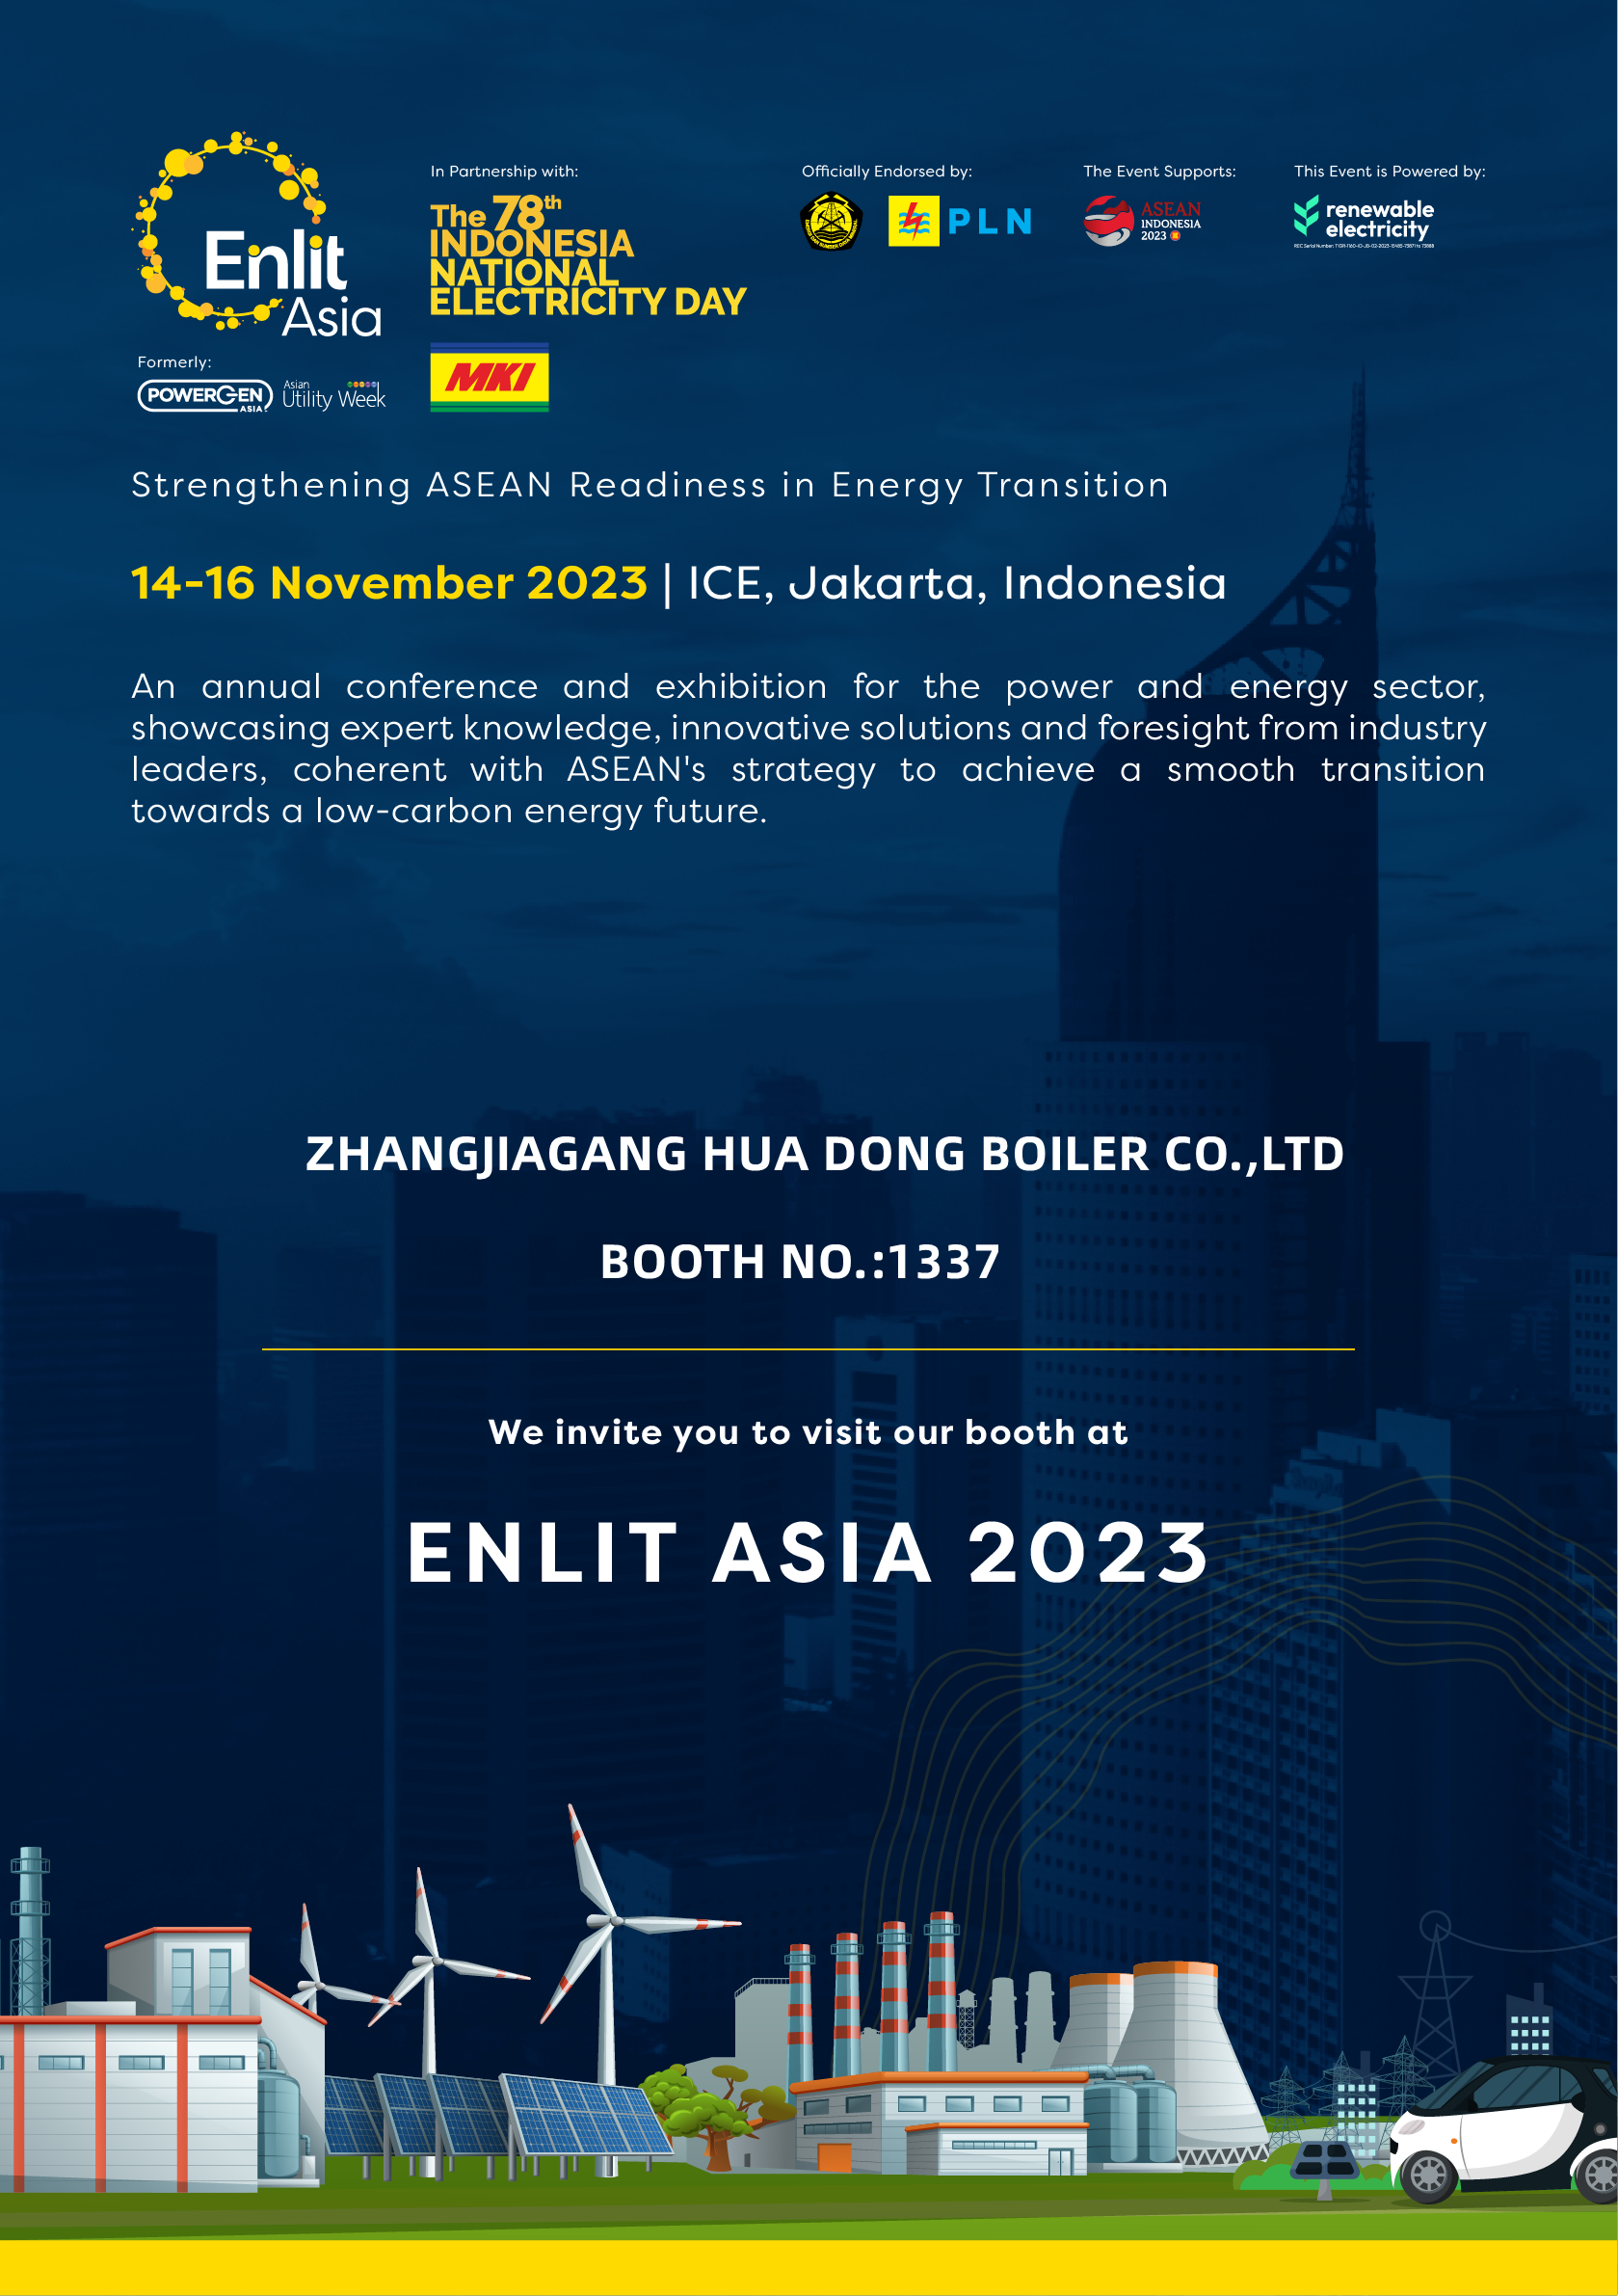 华东锅炉在 ENLIT ASIA 2023亚洲电力展